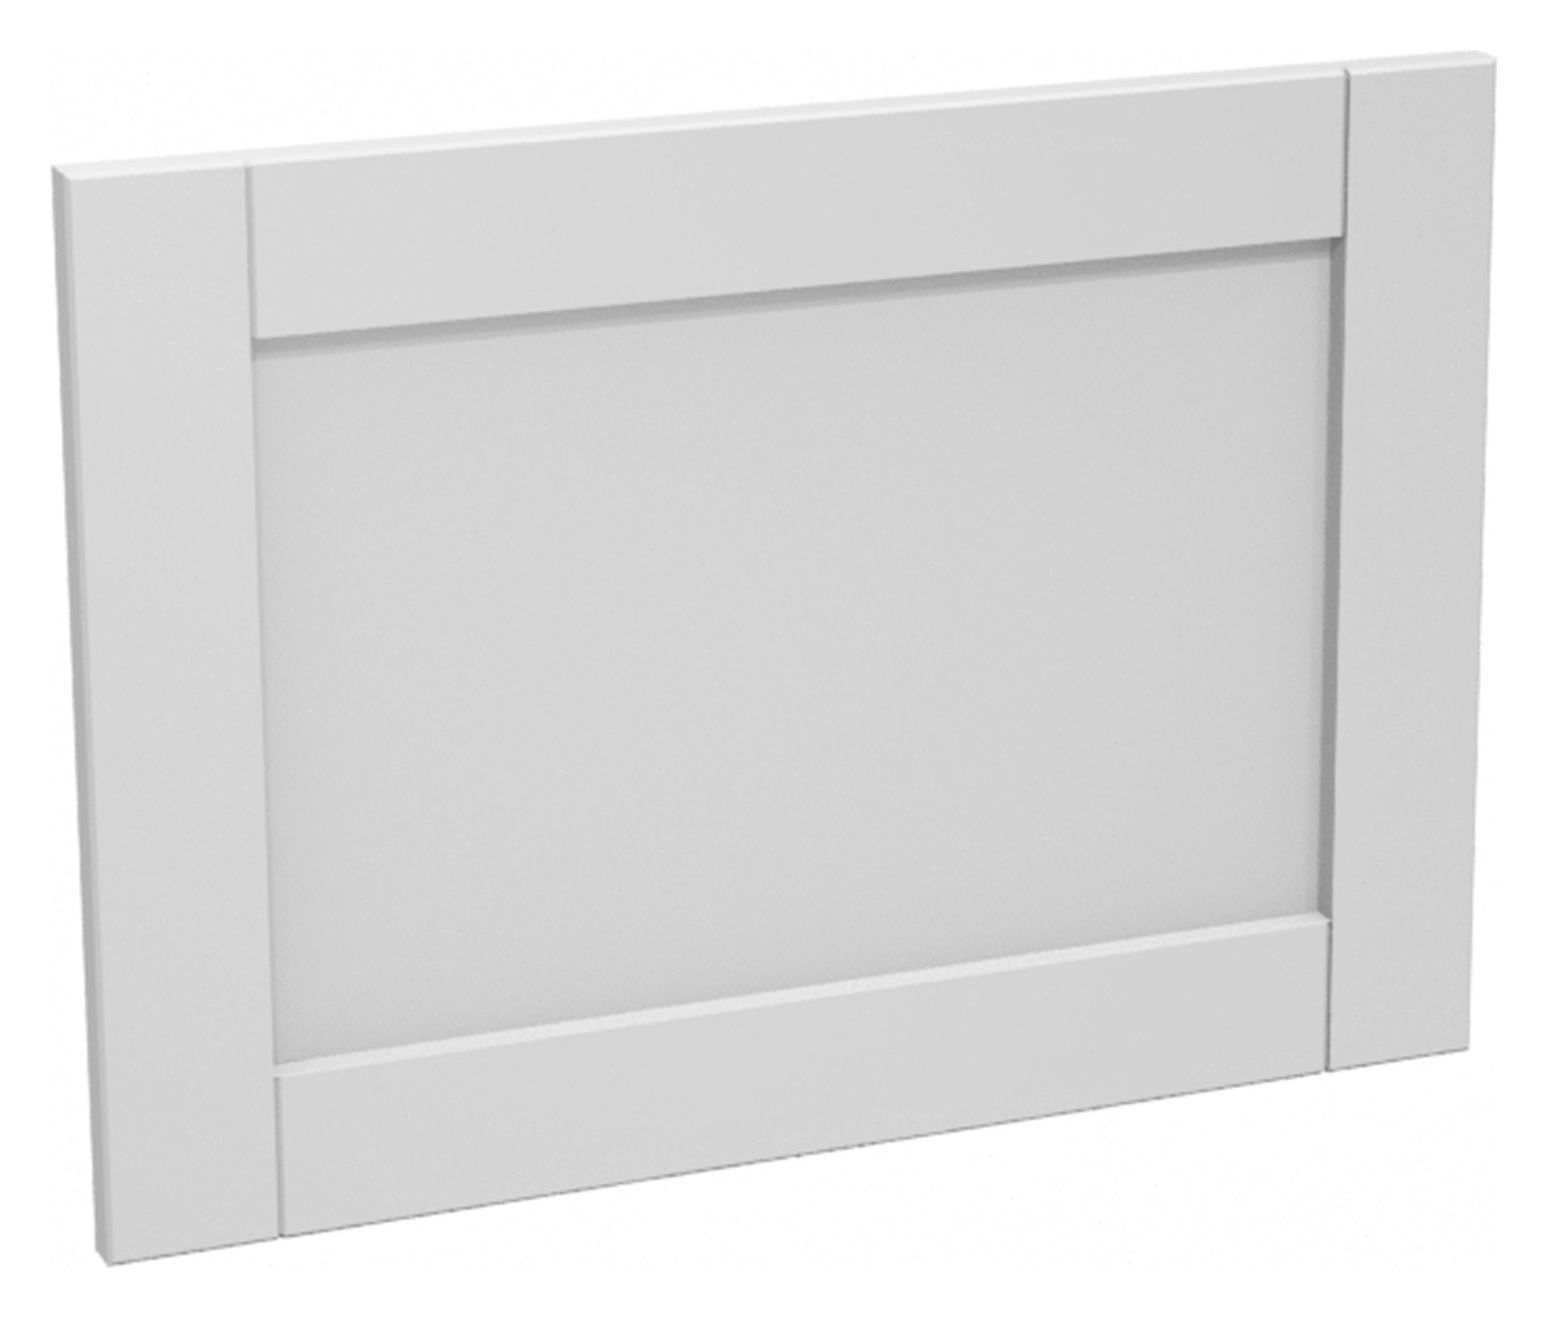 Image of Wickes Ohio Grey Shaker Appliance Door (D) - 600 x 437mm